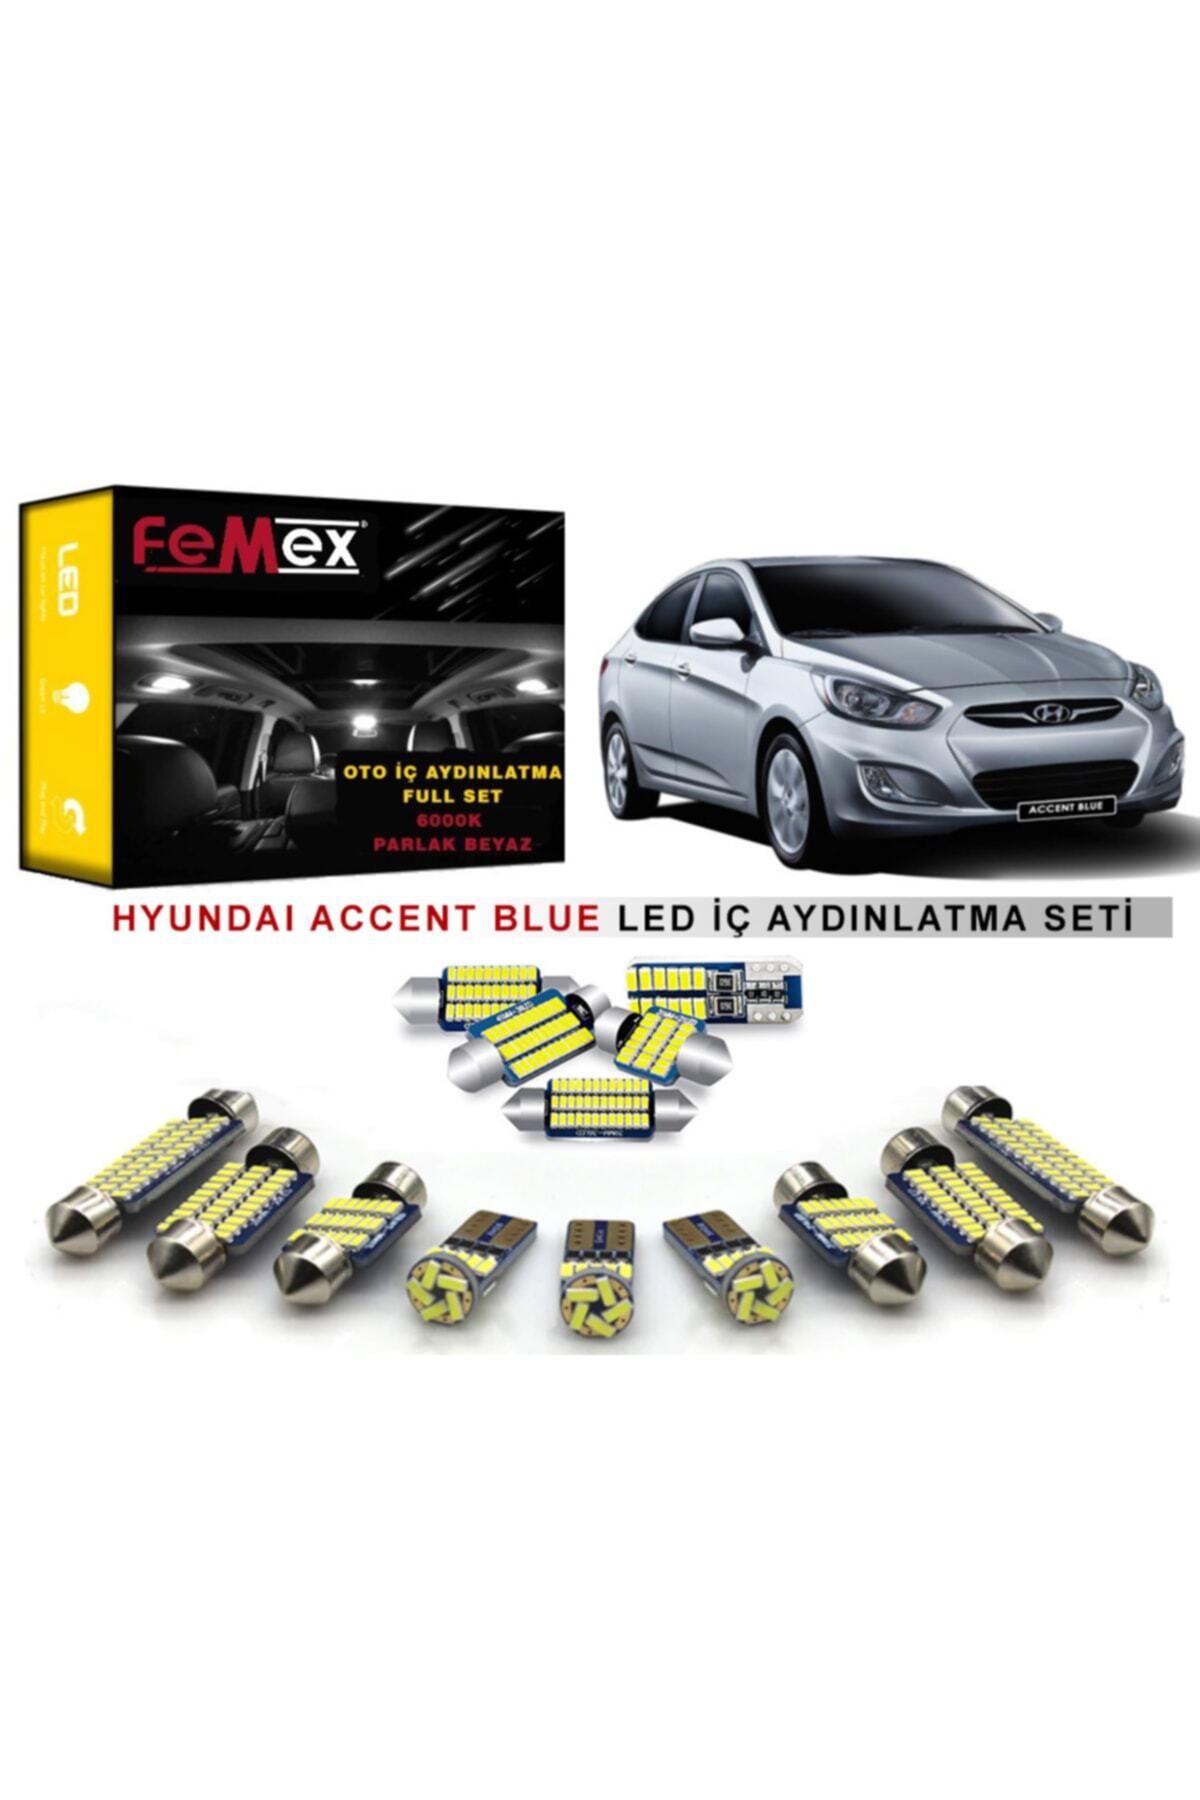 FEMEX Hyundai Accent Blue Led Iç Aydınlatma Ampul Seti Parlak Beyaz